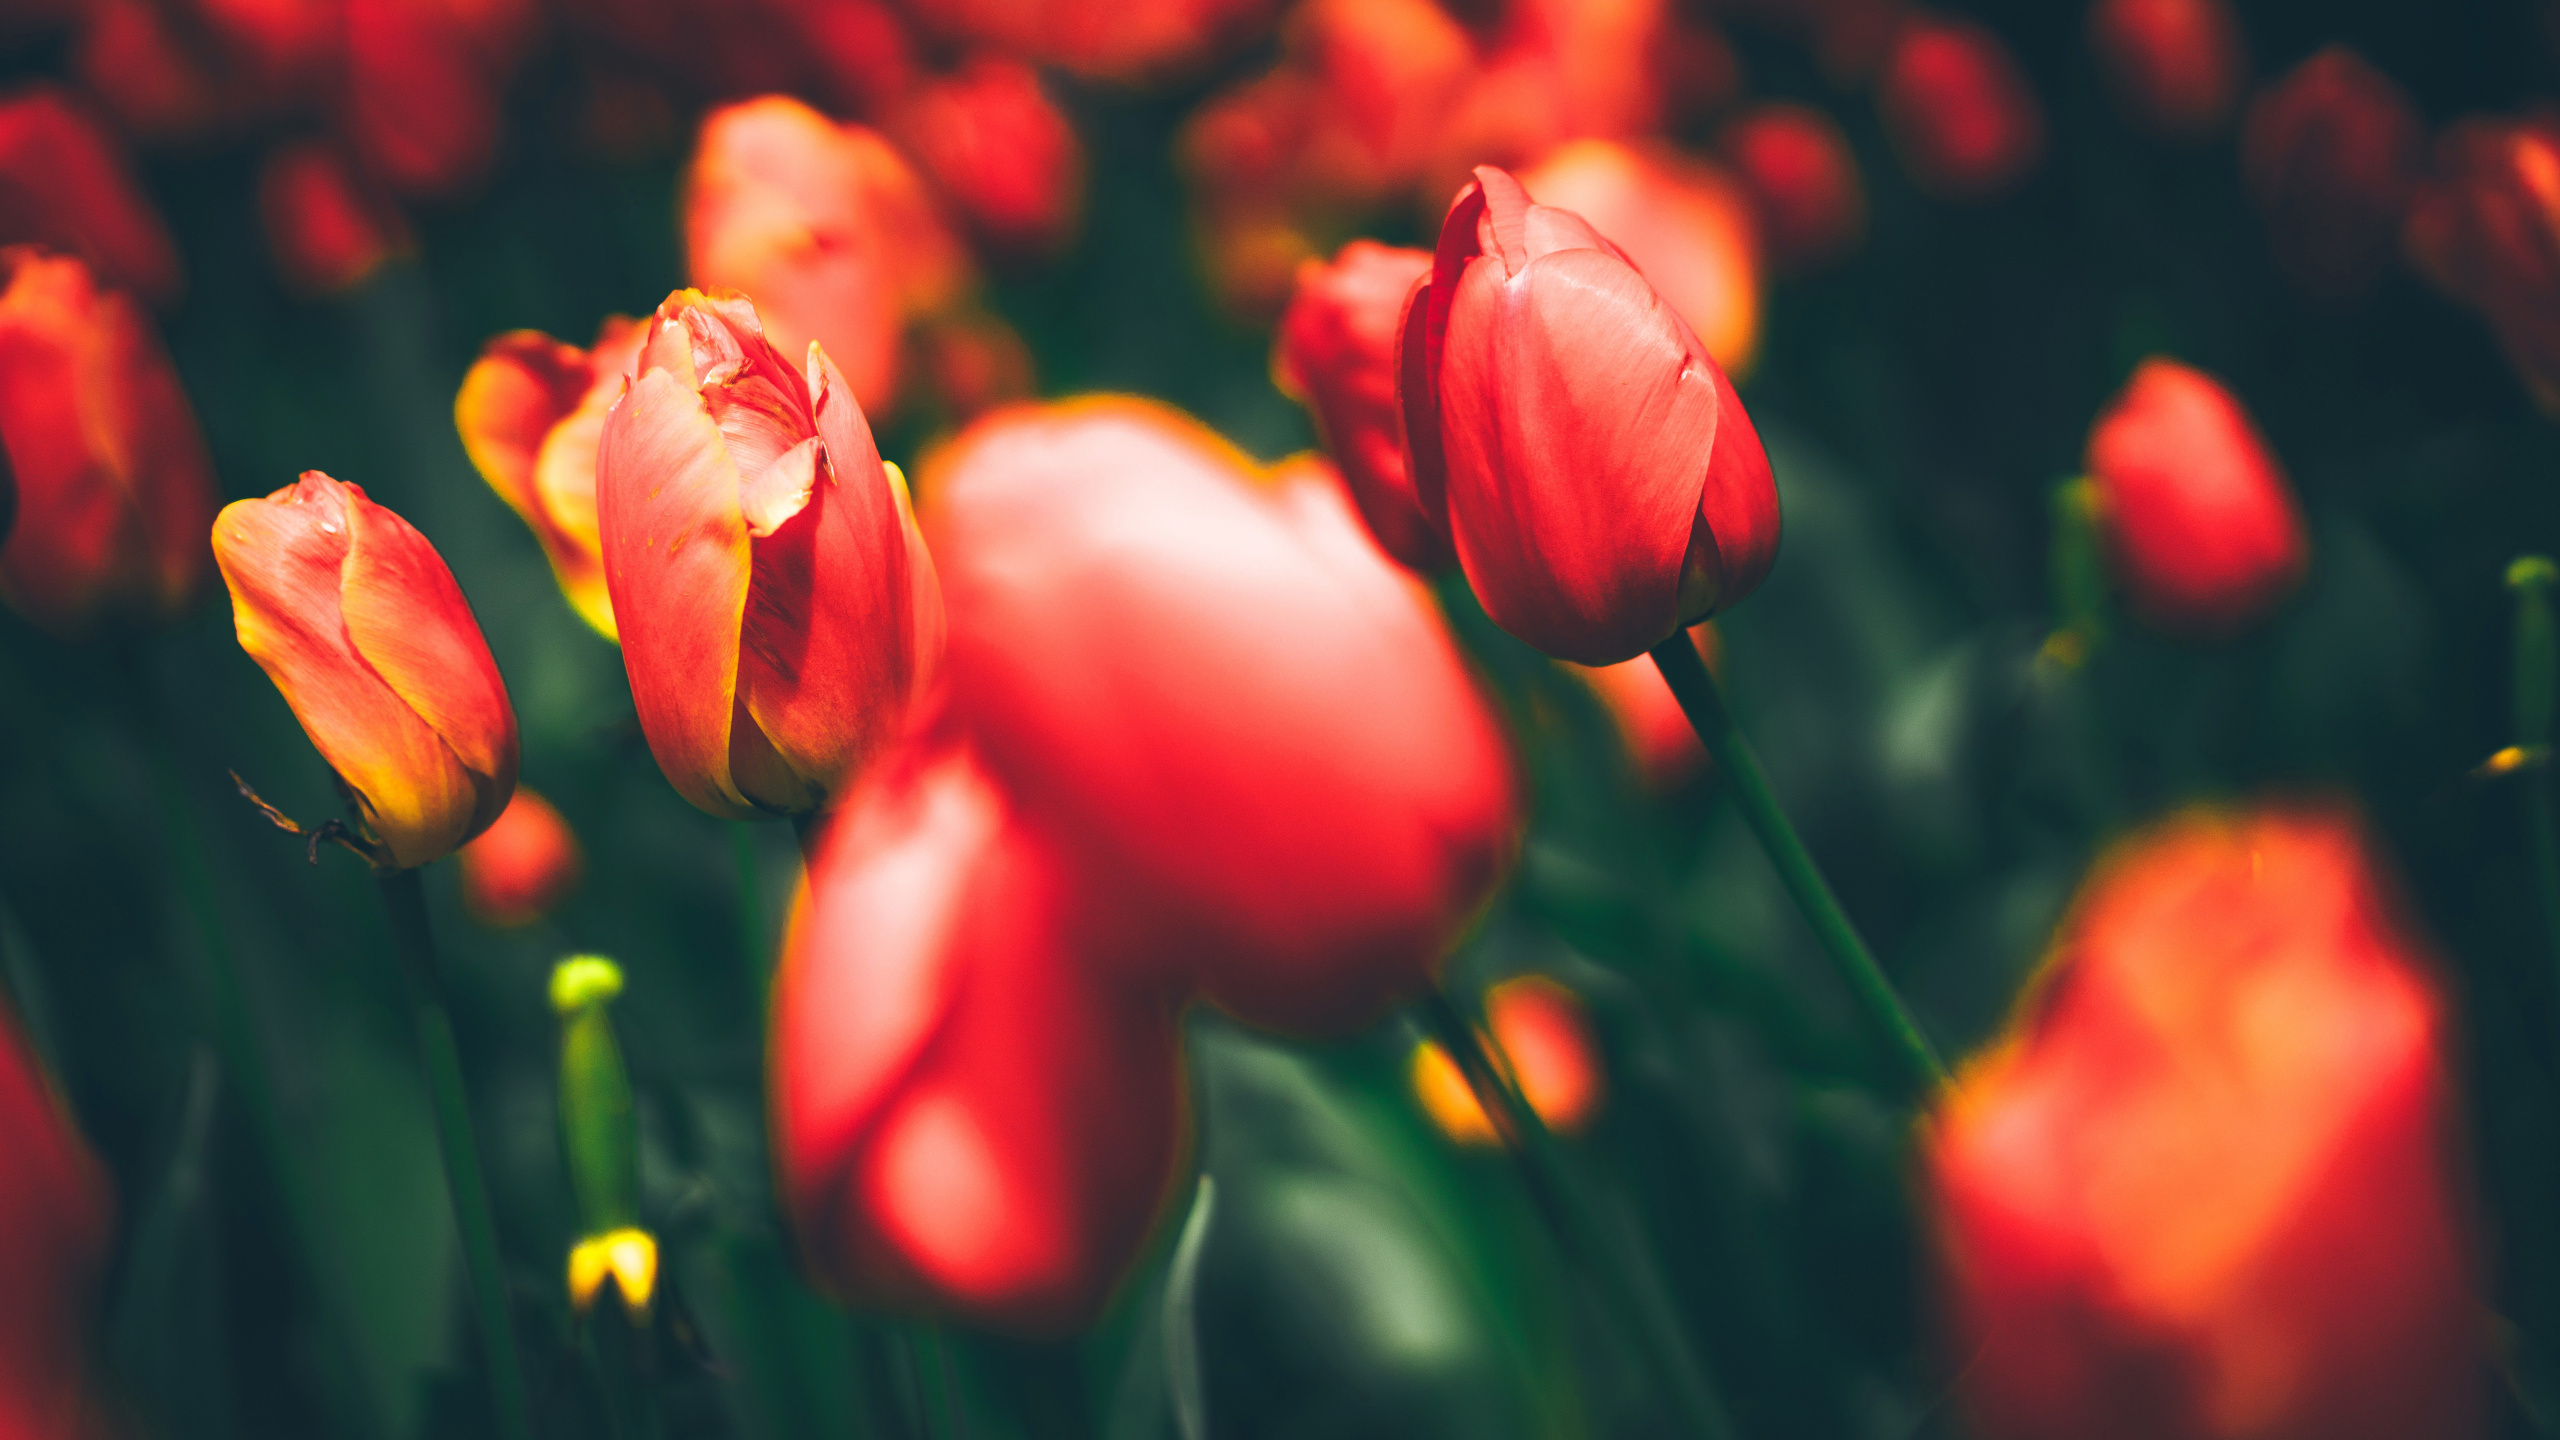 Tulipes Rouges en Fleurs Pendant la Journée. Wallpaper in 2560x1440 Resolution